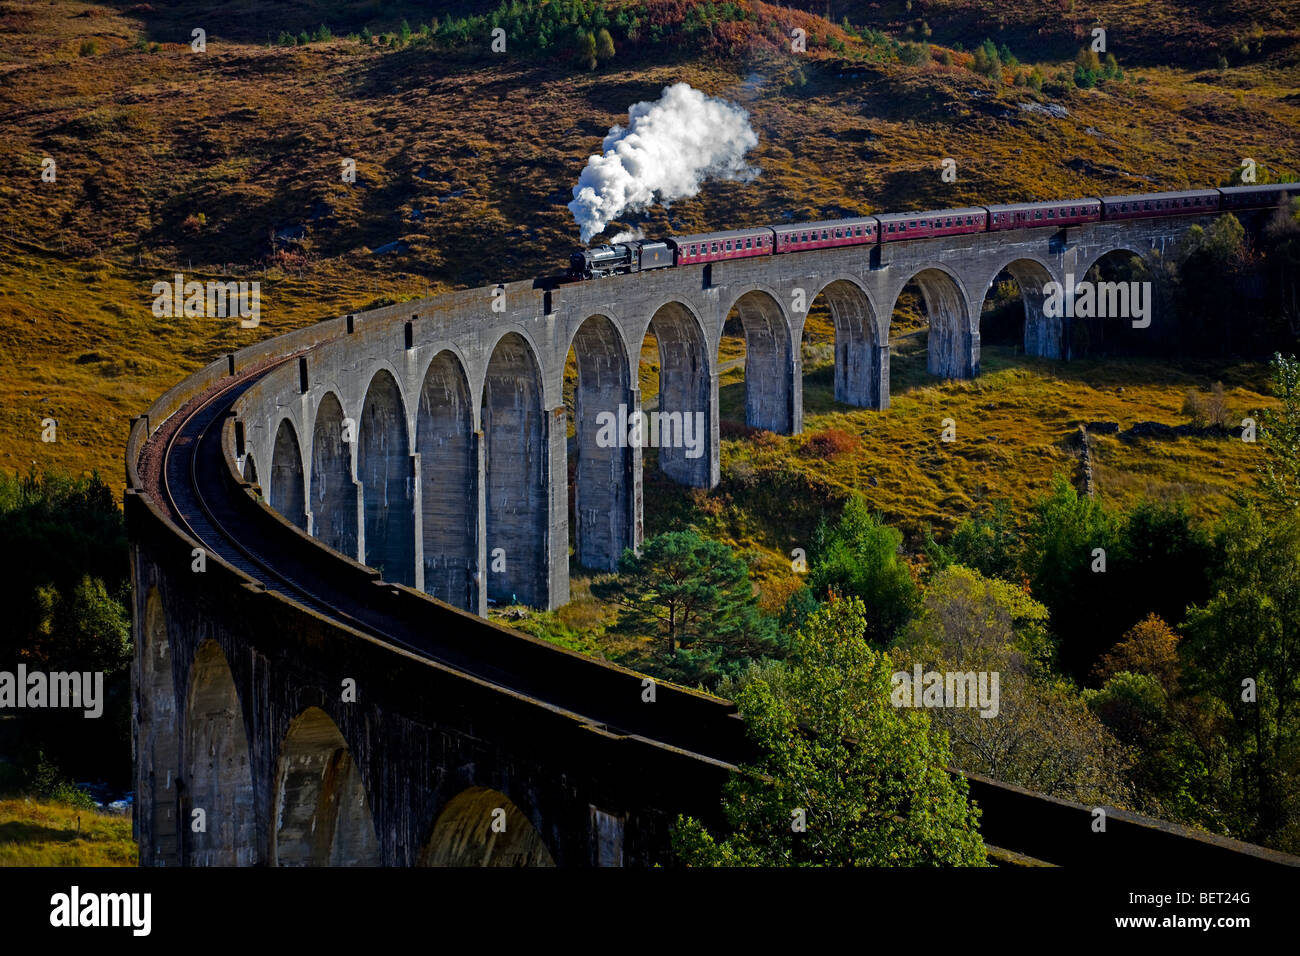 Passage du Train à vapeur jacobite, viaduc de Glenfinnan, Lochaber, Écosse, Royaume-Uni, Europe Banque D'Images